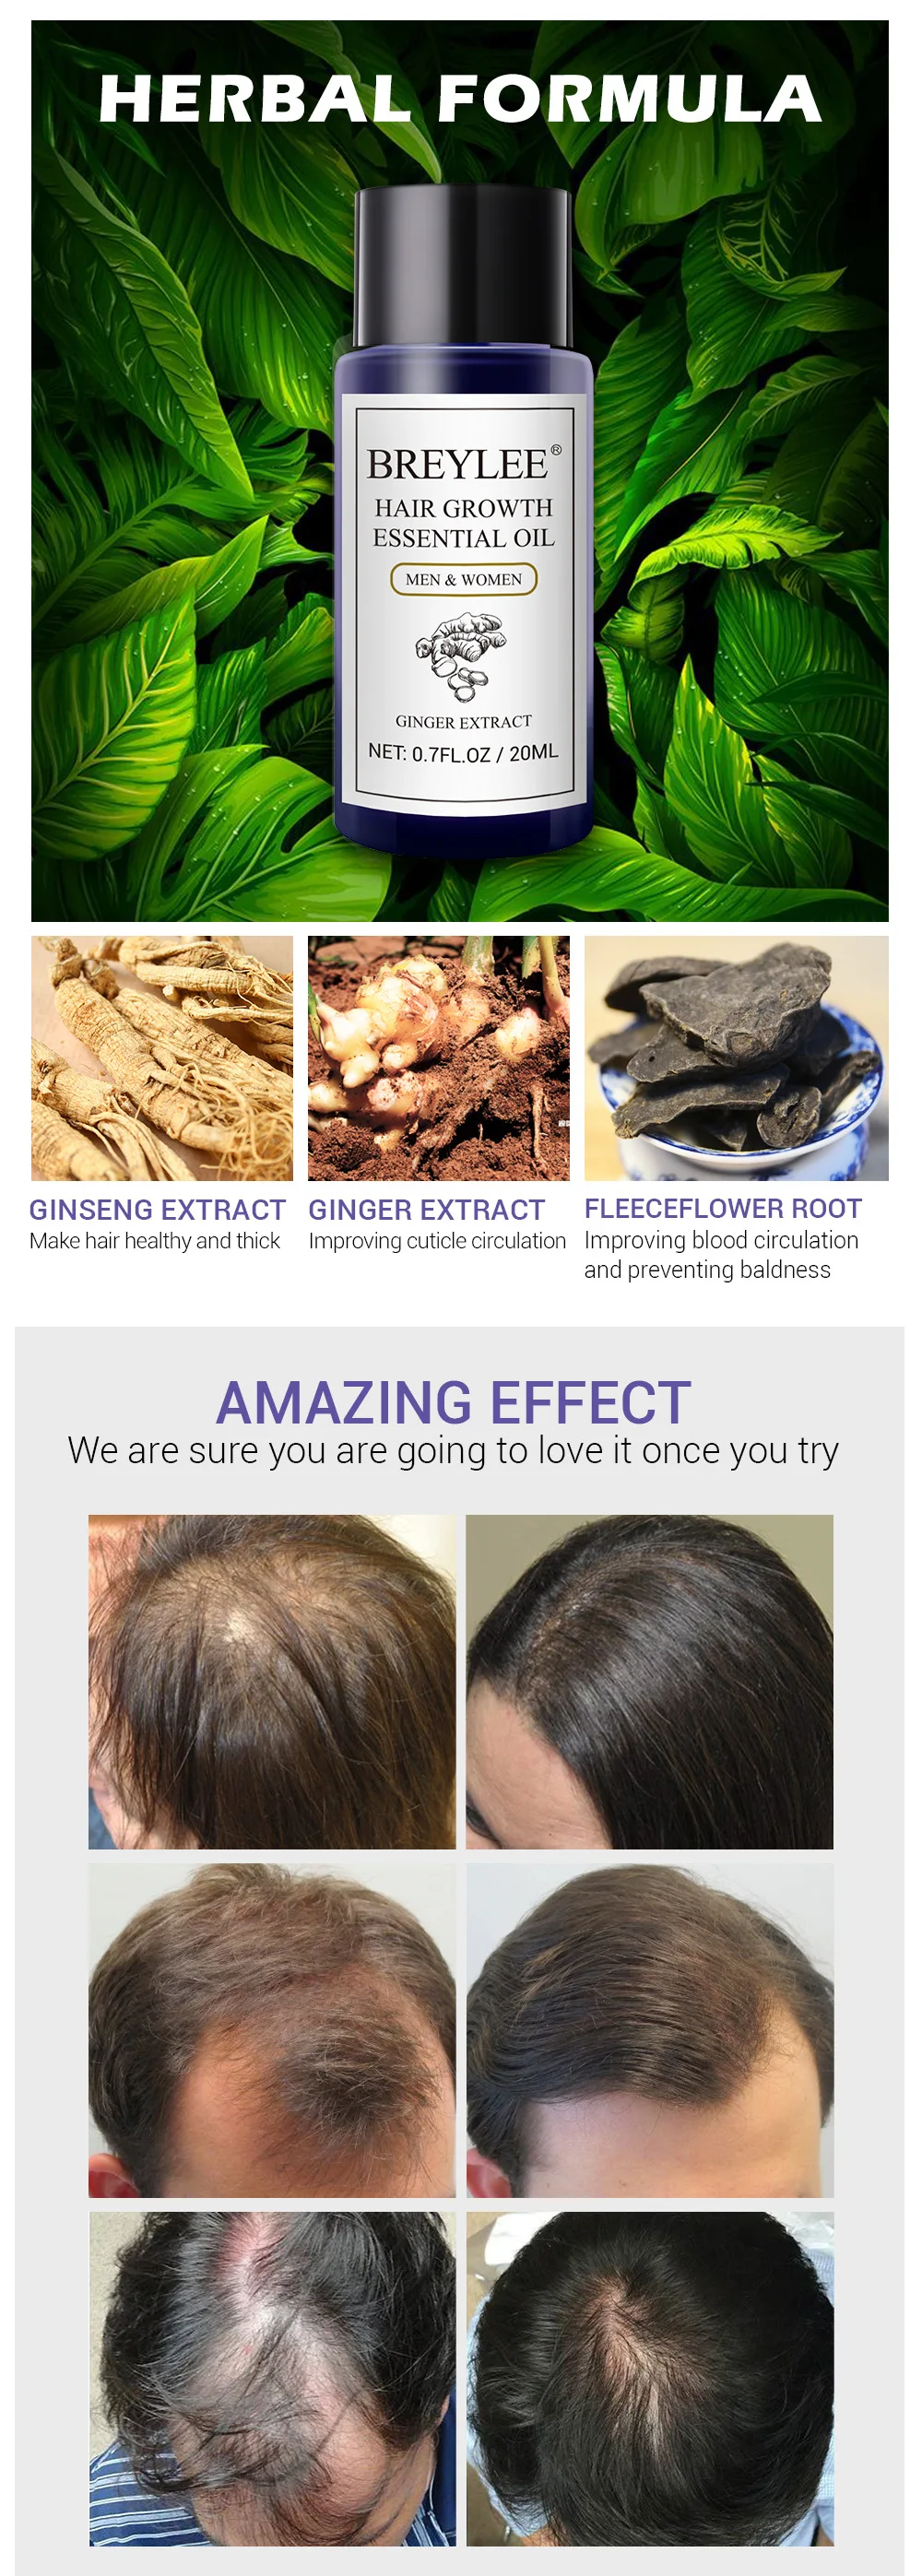 20 мл натуральное эфирное масло имбиря для роста волос жидкое масло для более быстрого роста волос мощное масло для лечения против выпадения волос продукты для ухода за волосами